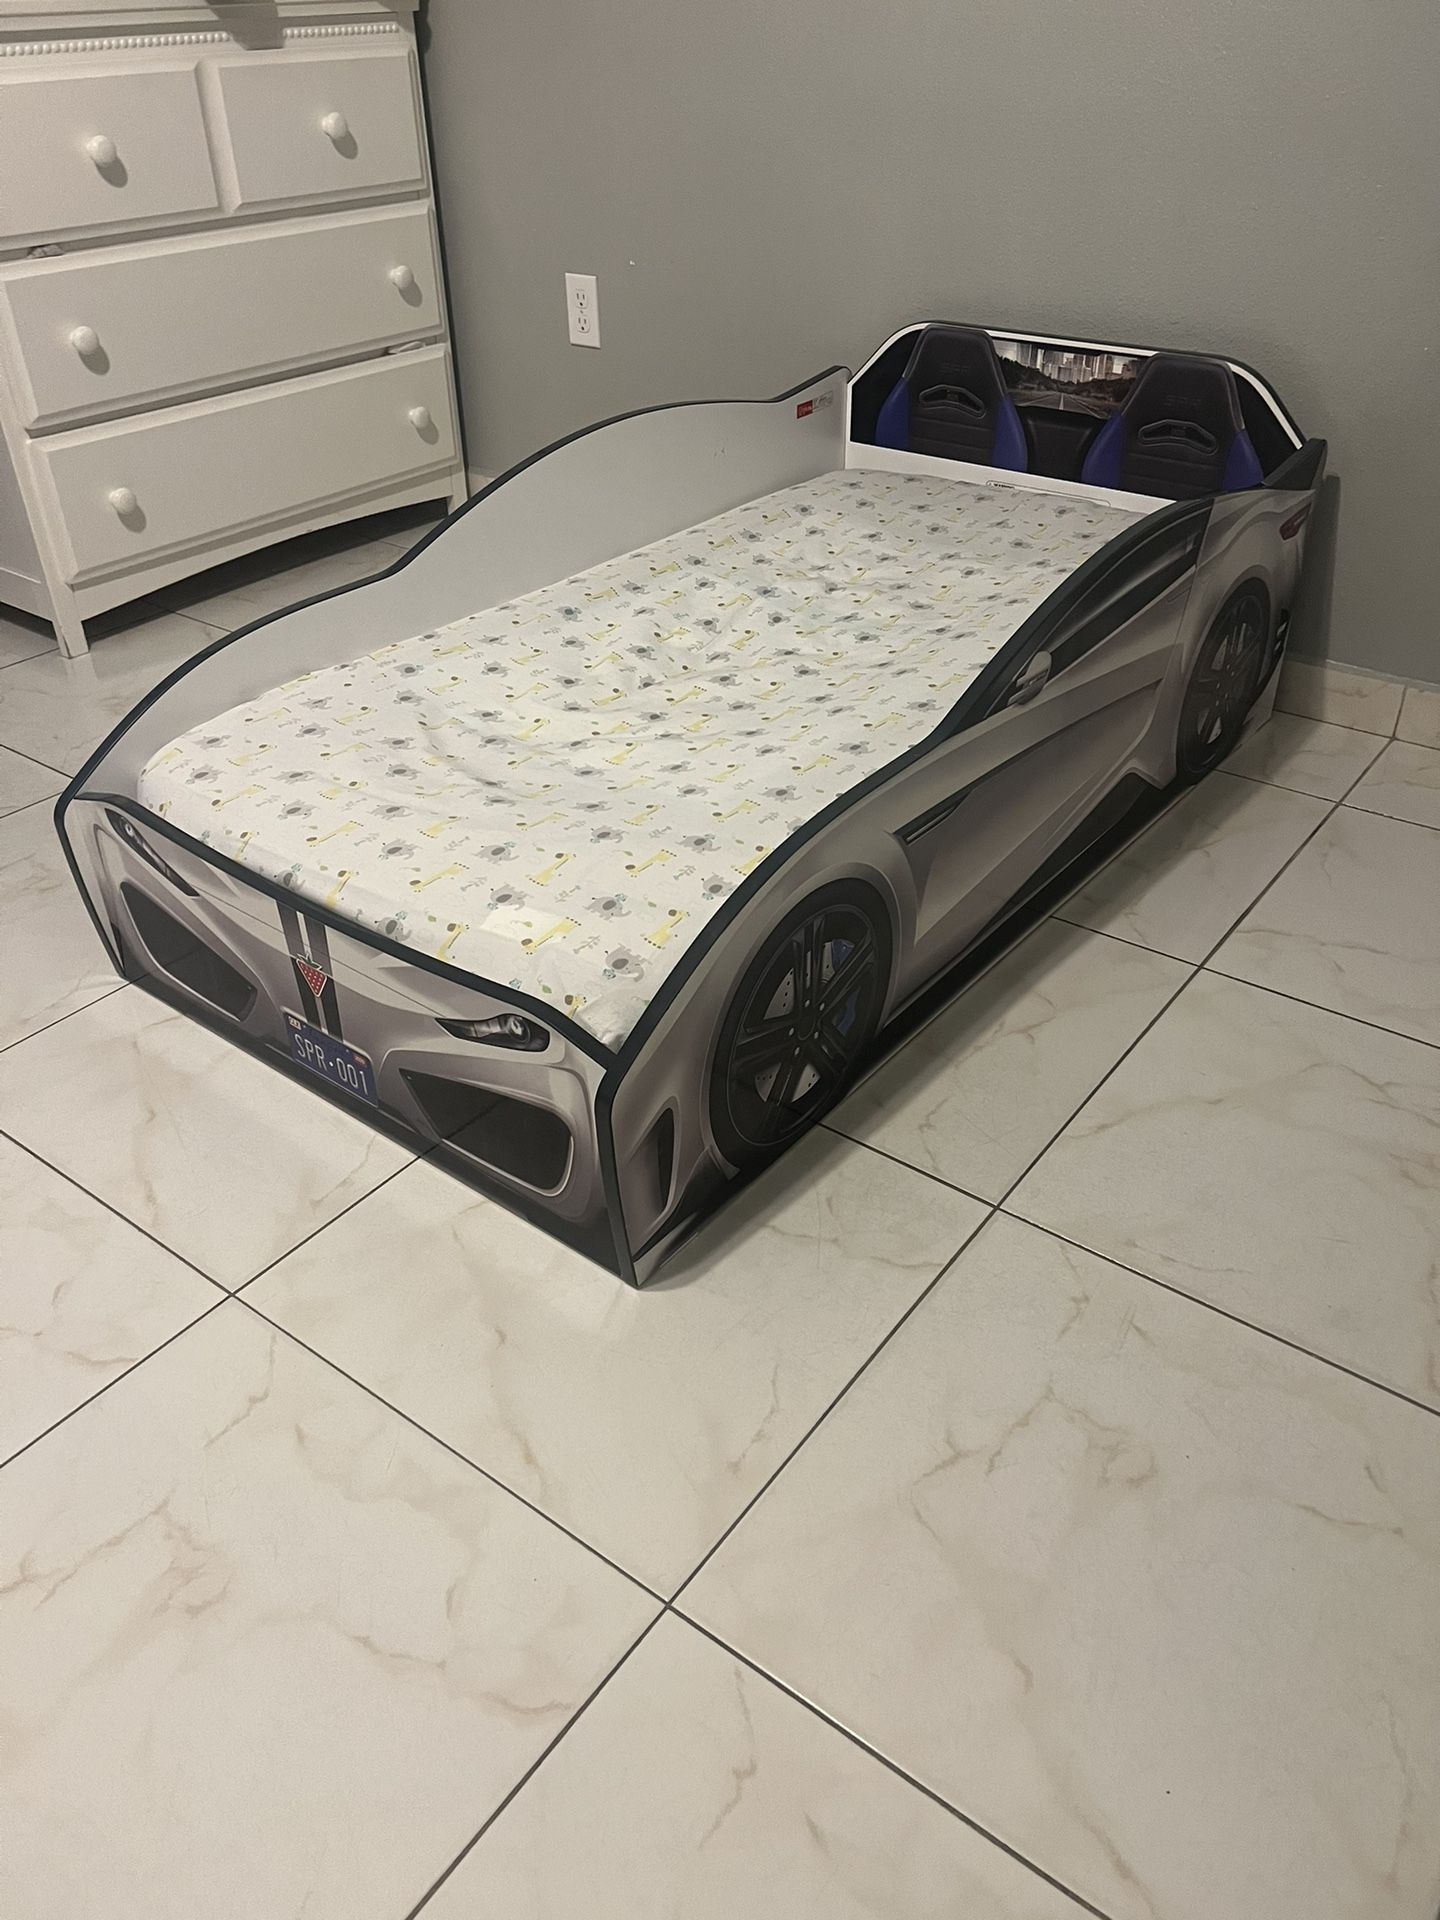 Car Bed